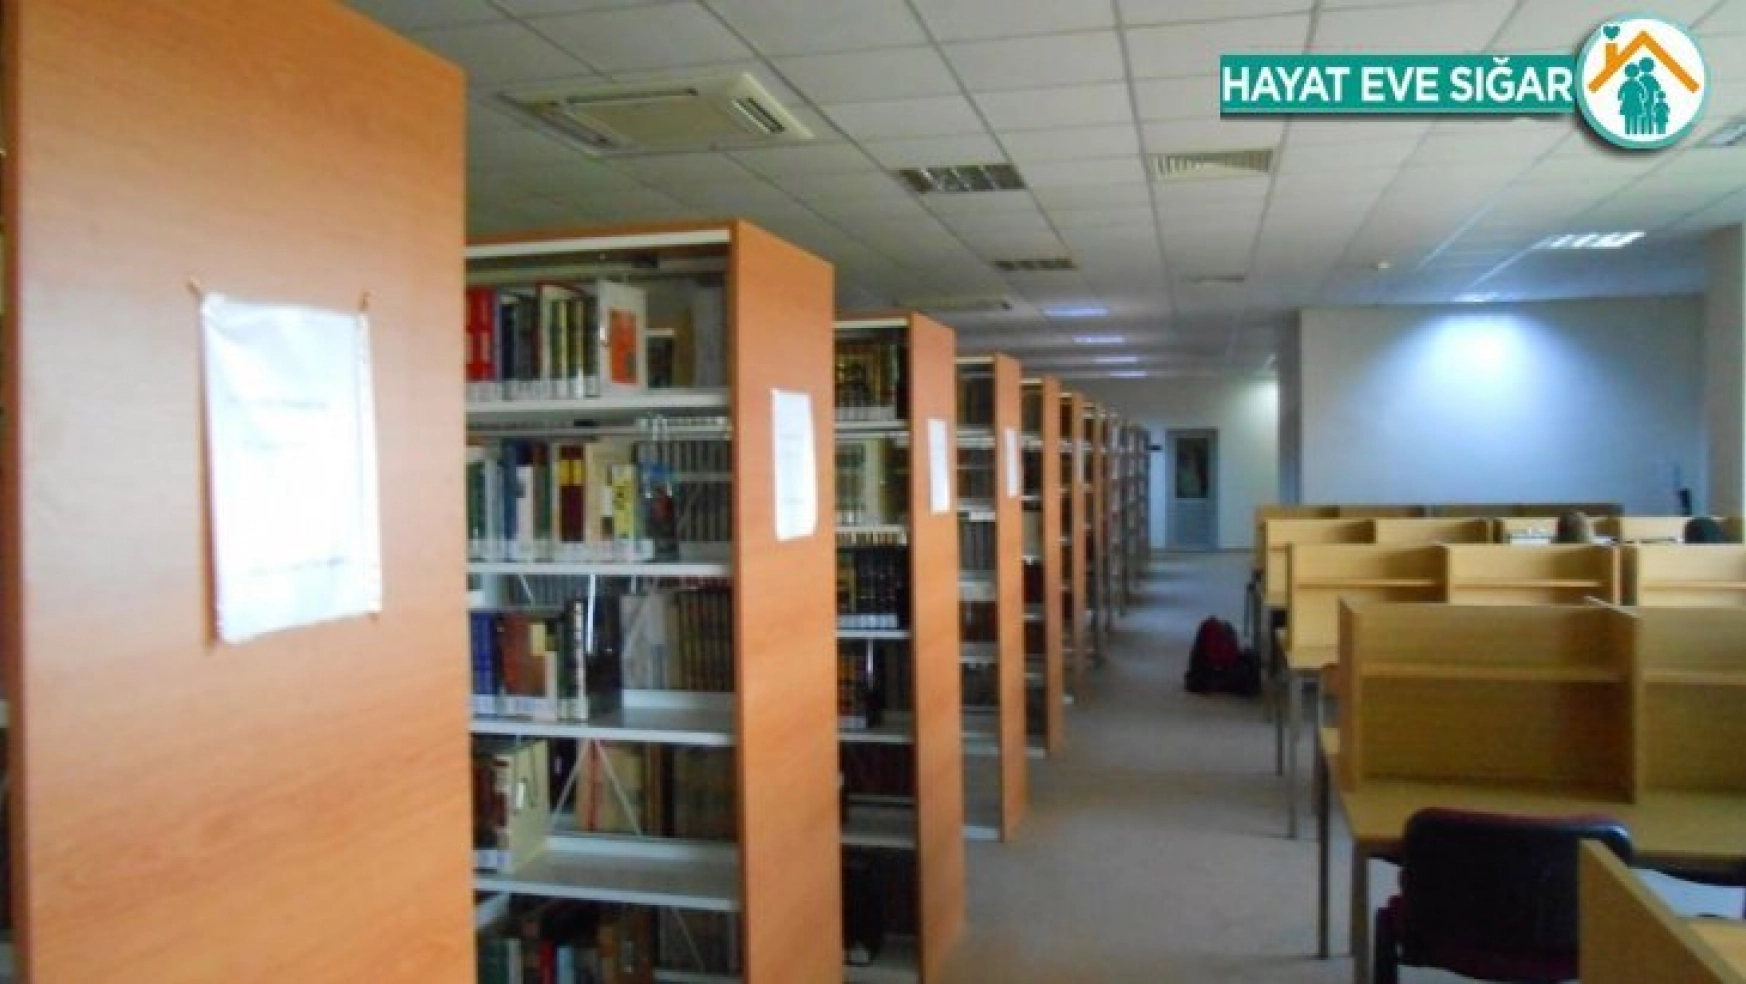 İnönü üniversitesi Kütüphanesi'ne Covid-19 ayarı